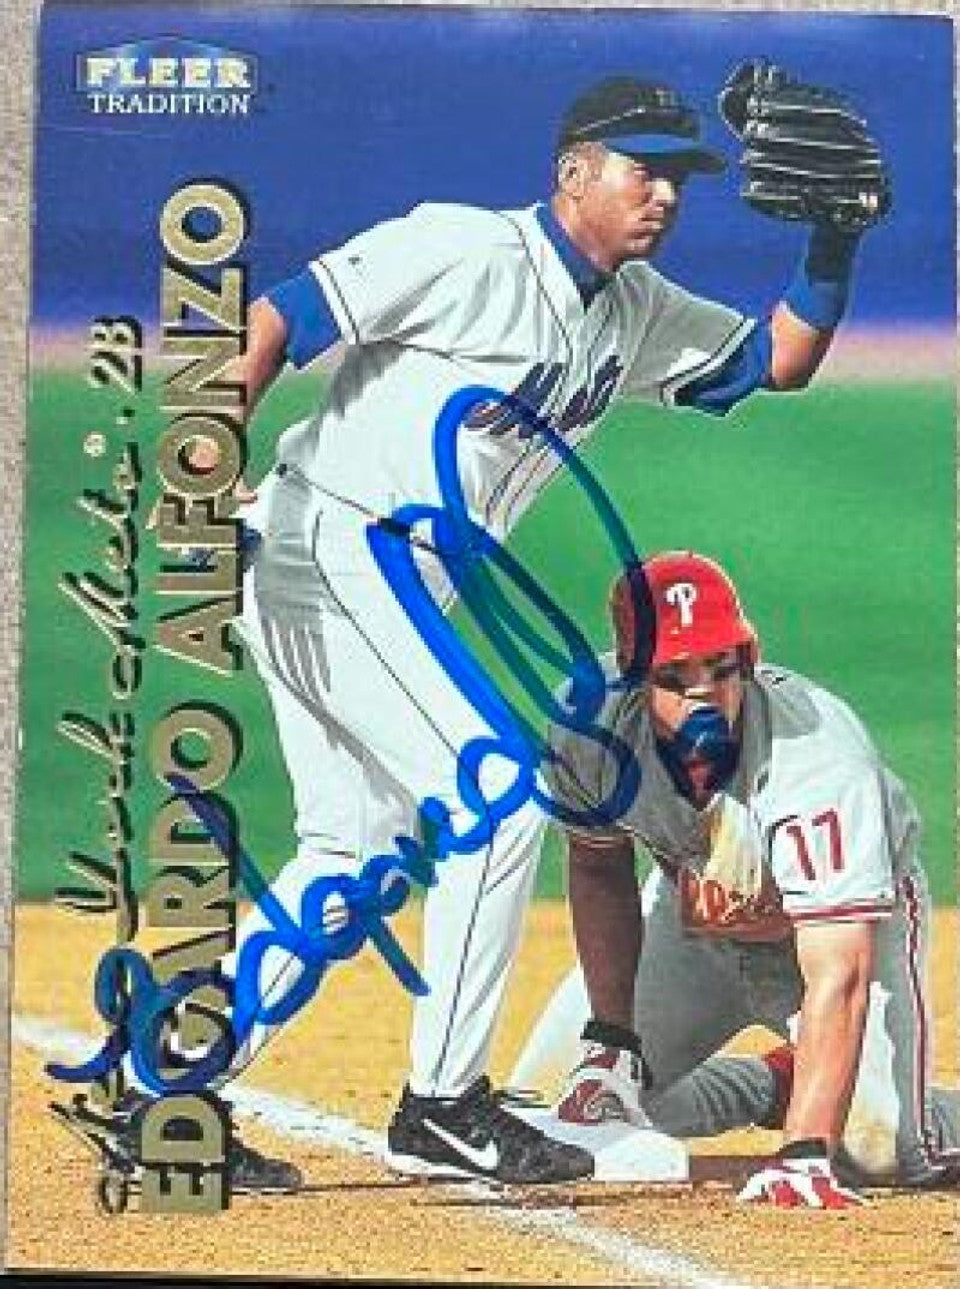 エドガルド・アルフォンゾ サイン入り 1999 フリーア トラディション ベースボールカード - ニューヨーク メッツ